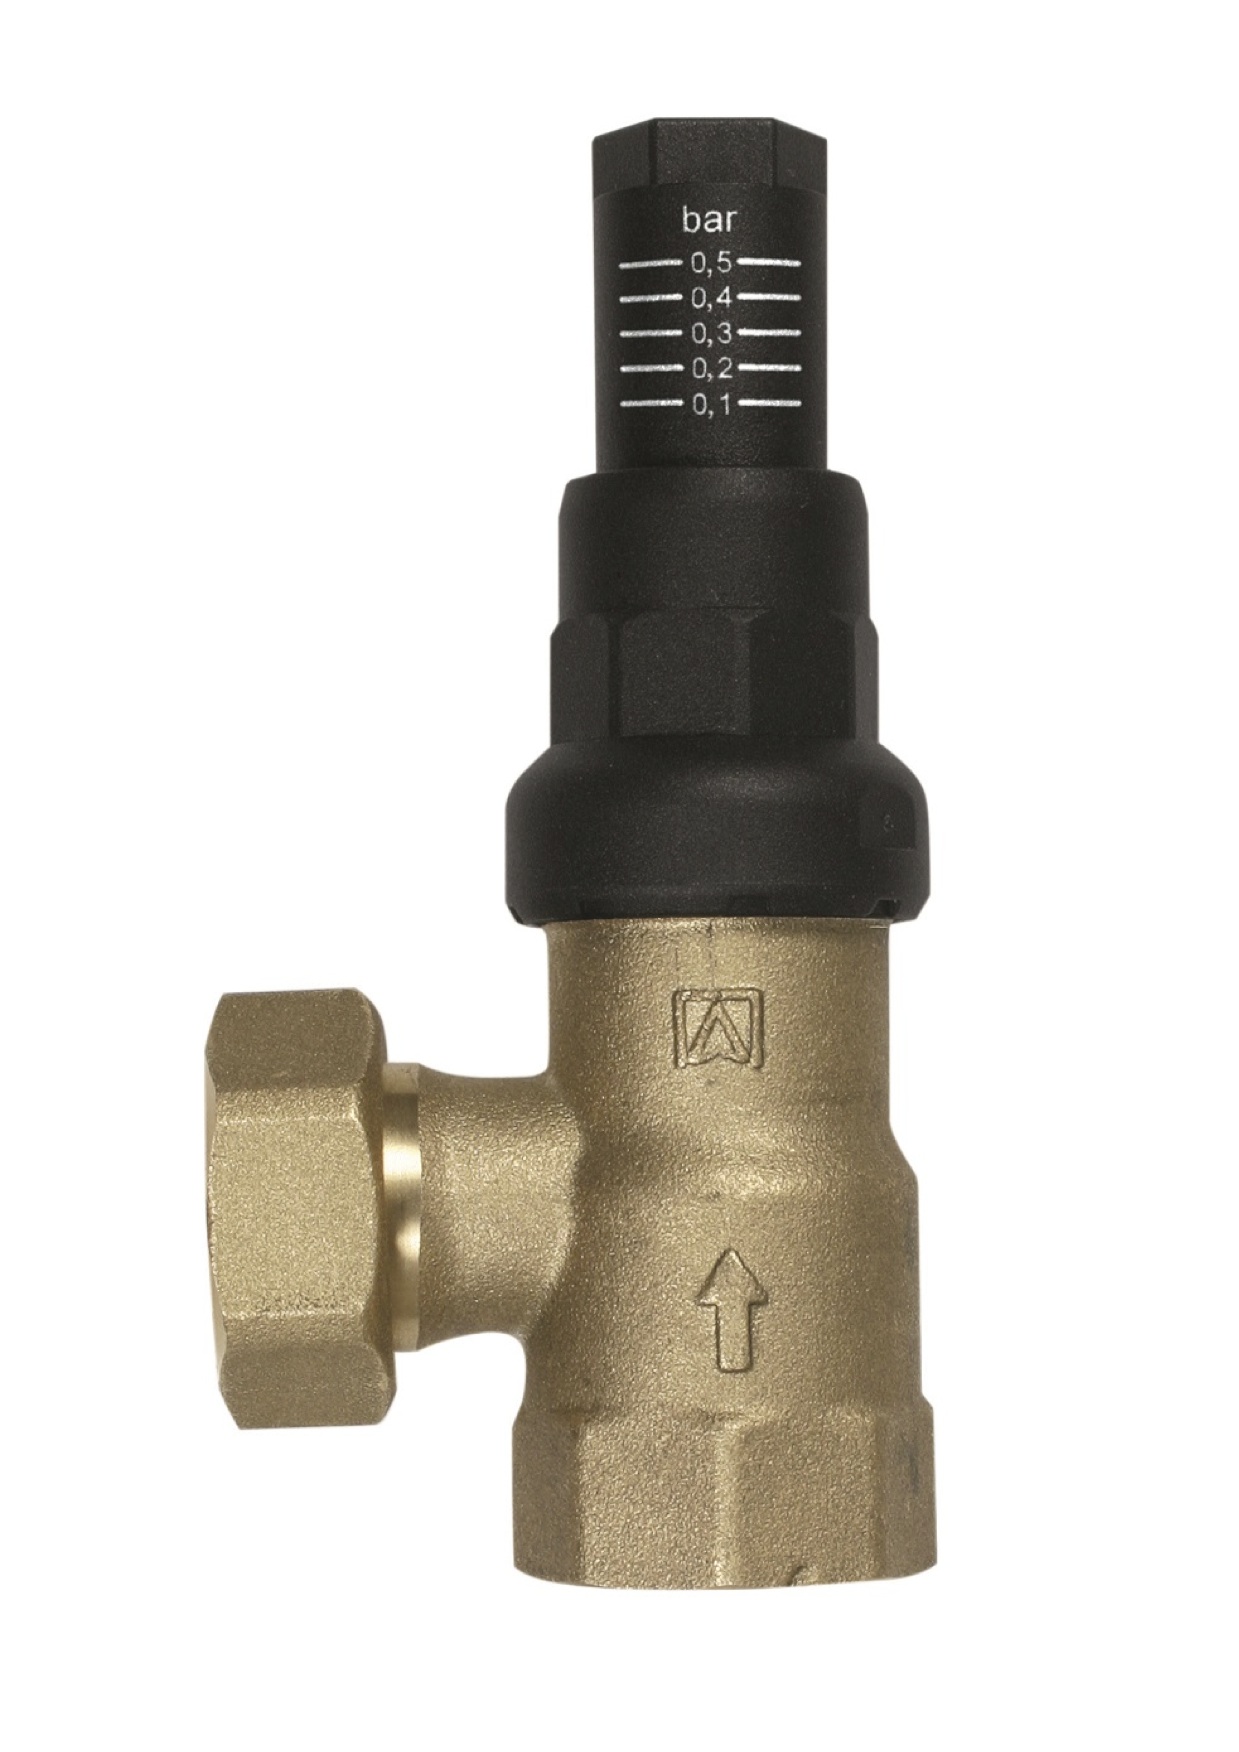 Отопительные клапана. Afriso аварийный клапан MSW, 6 бар, rp3\4" x rp1". Перепускной байпасный клапан отопления. Перепускной клапан для отопления 3/4. Перепускной клапан 1/2 для отопления.